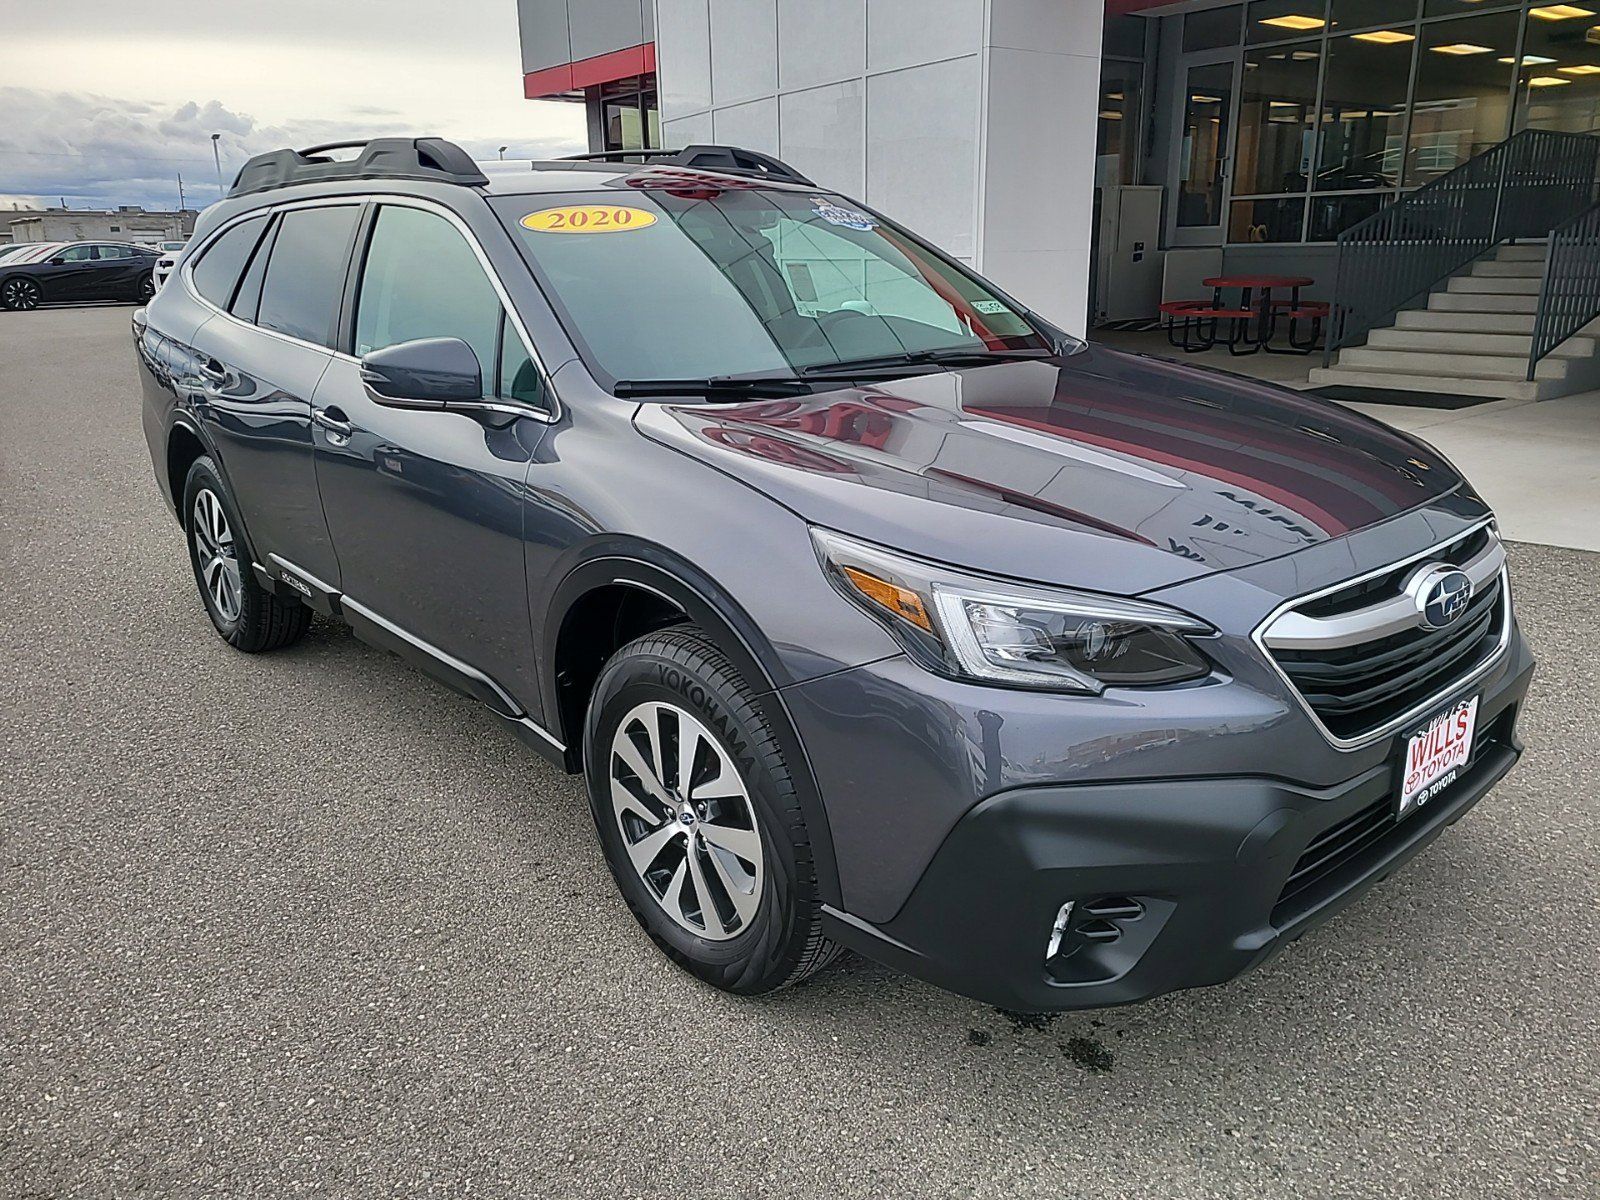 2020 - Subaru - Outback - $27,999